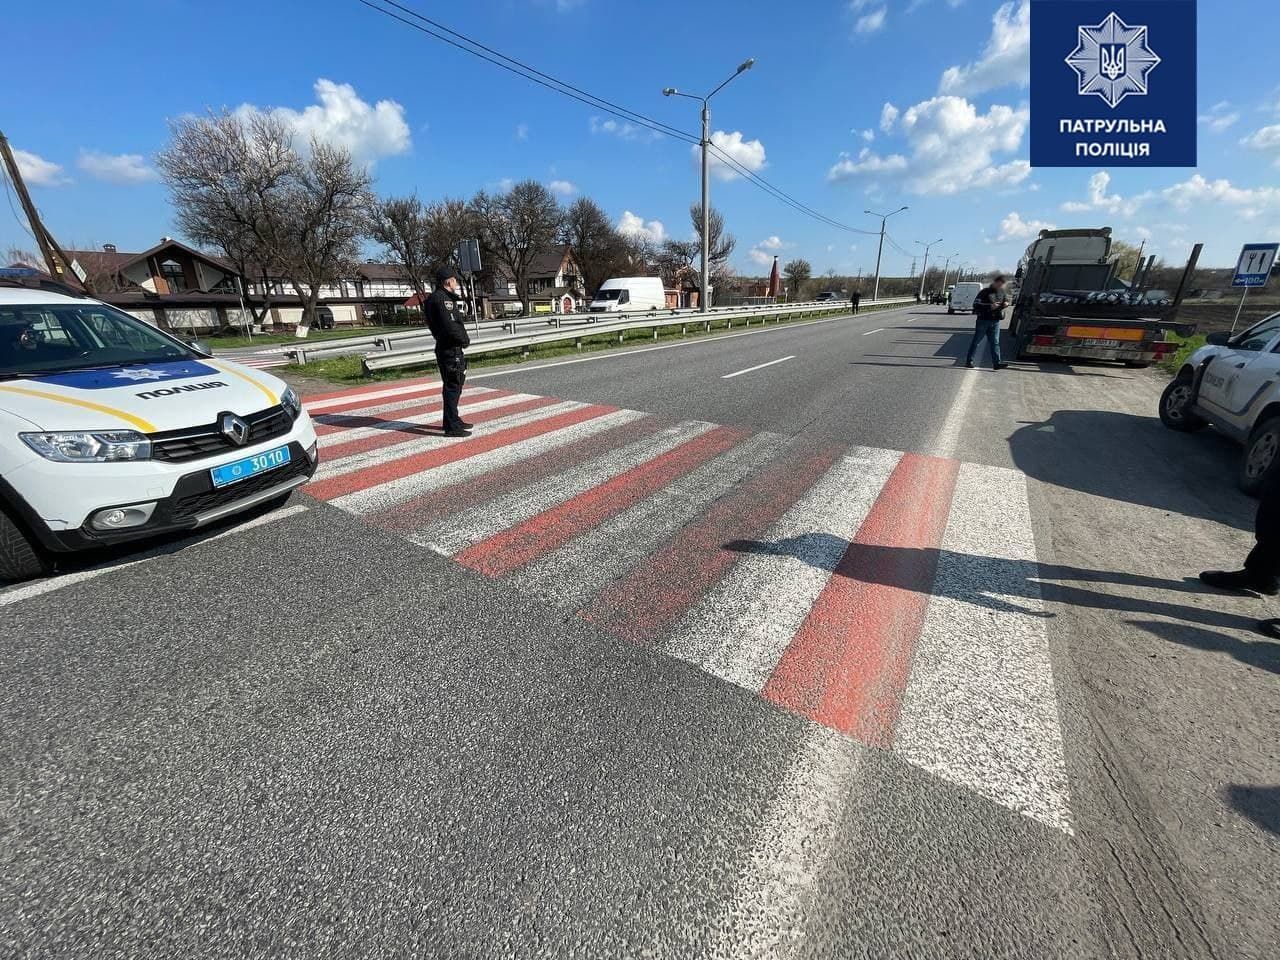 Відразу на переході: на Дніпропетровщині водійка збила 2 малолітніх дітей